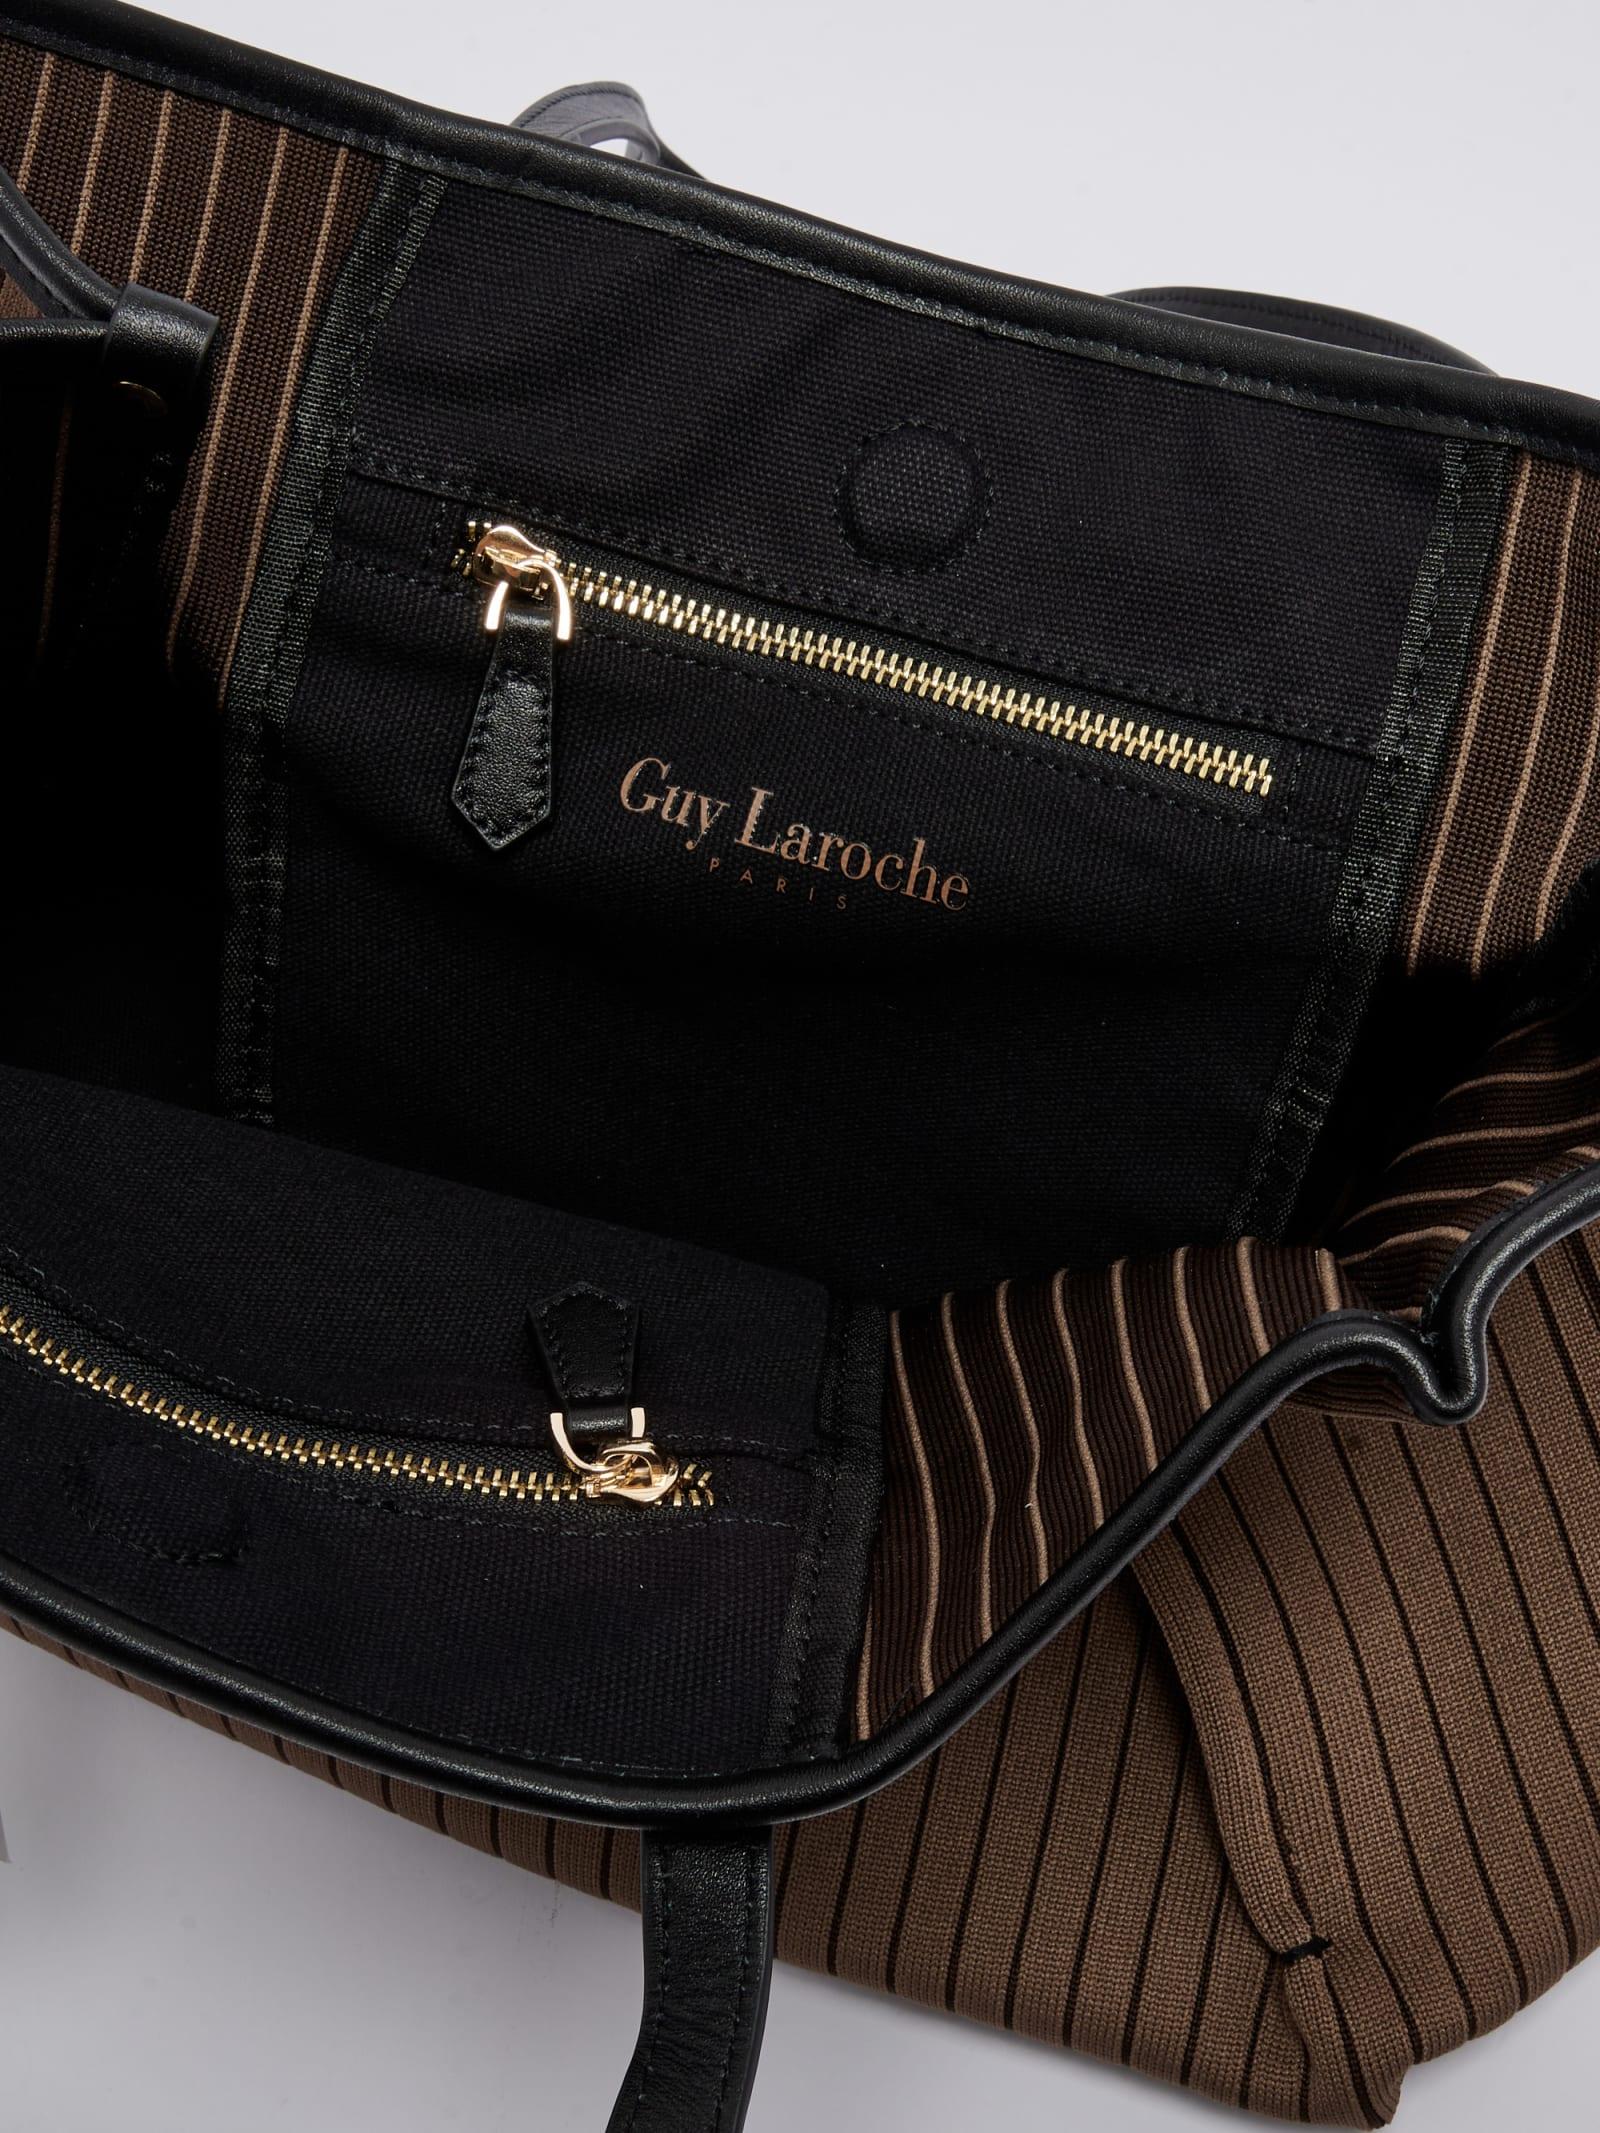 Guy Laroche Paris Shoulder Bags